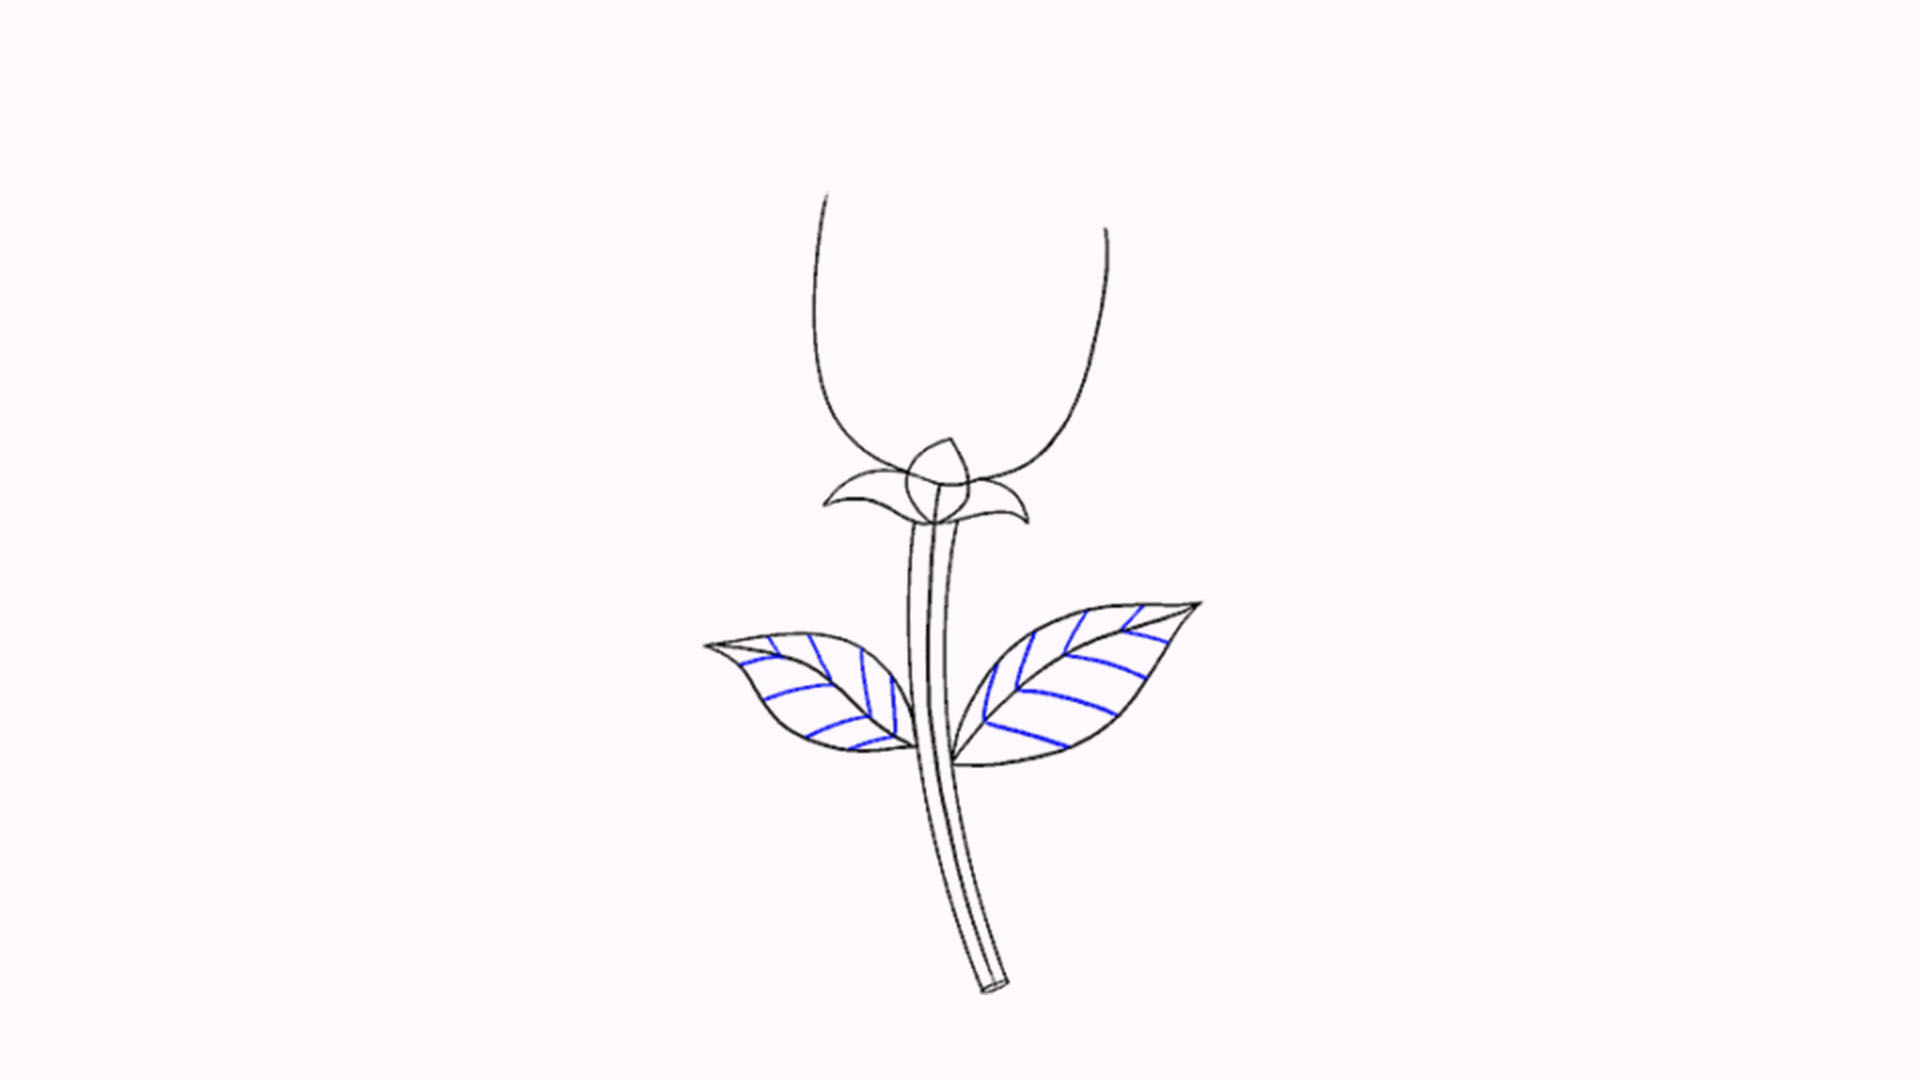 Vẽ các đường cong ở phía trên tạo thành cánh hoa hoàn chỉnh